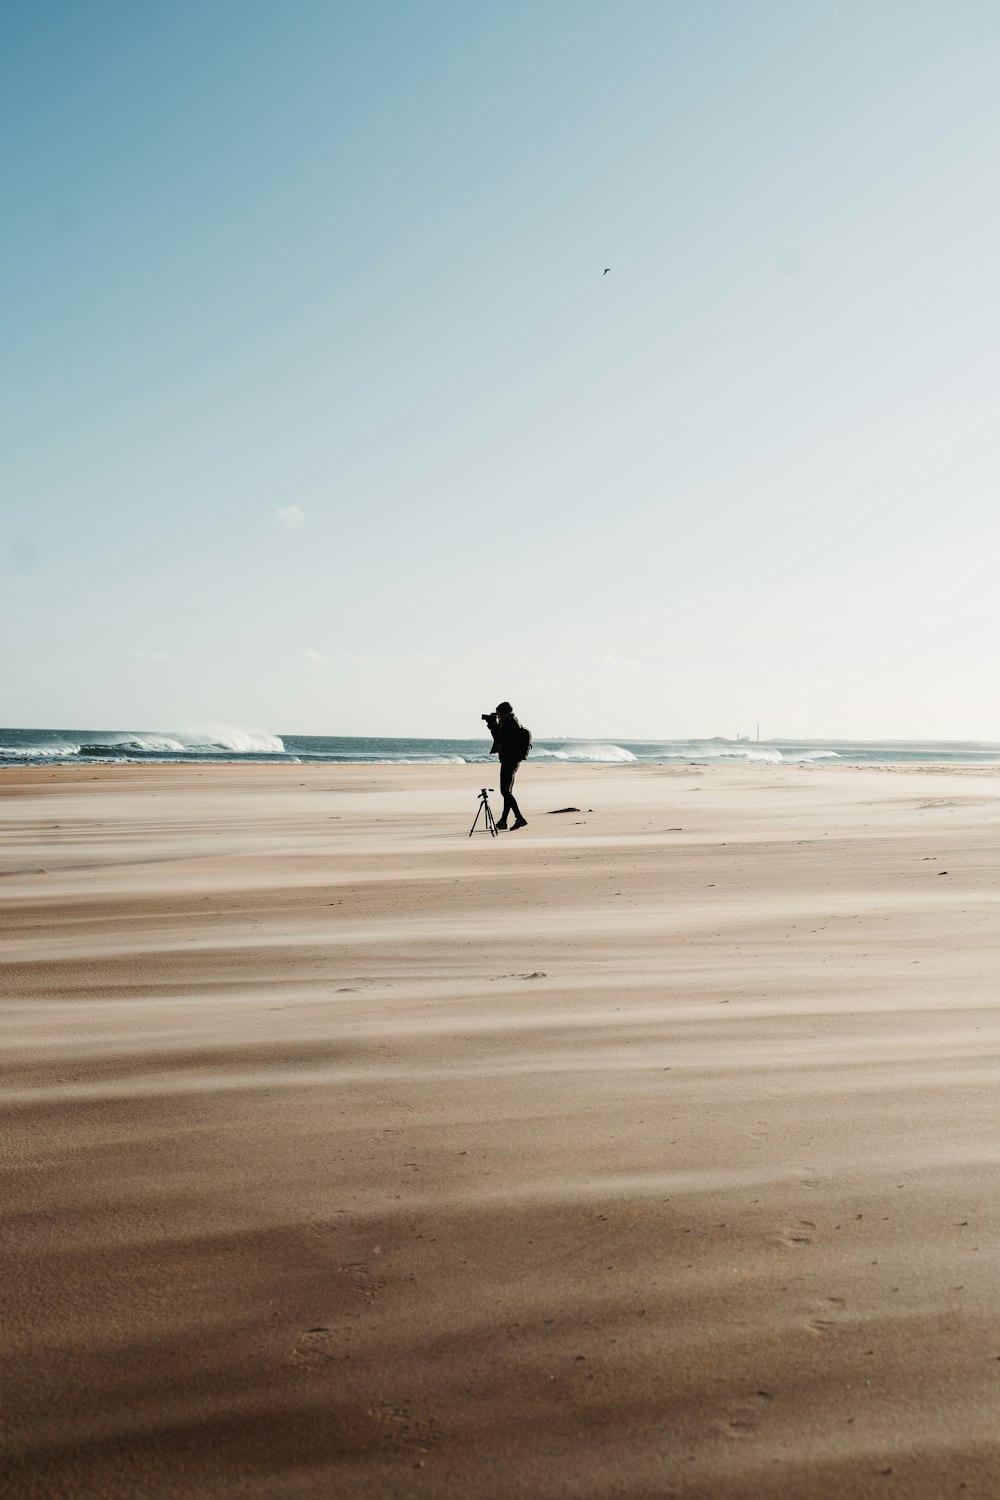 man in black jacket walking on beach during daytime